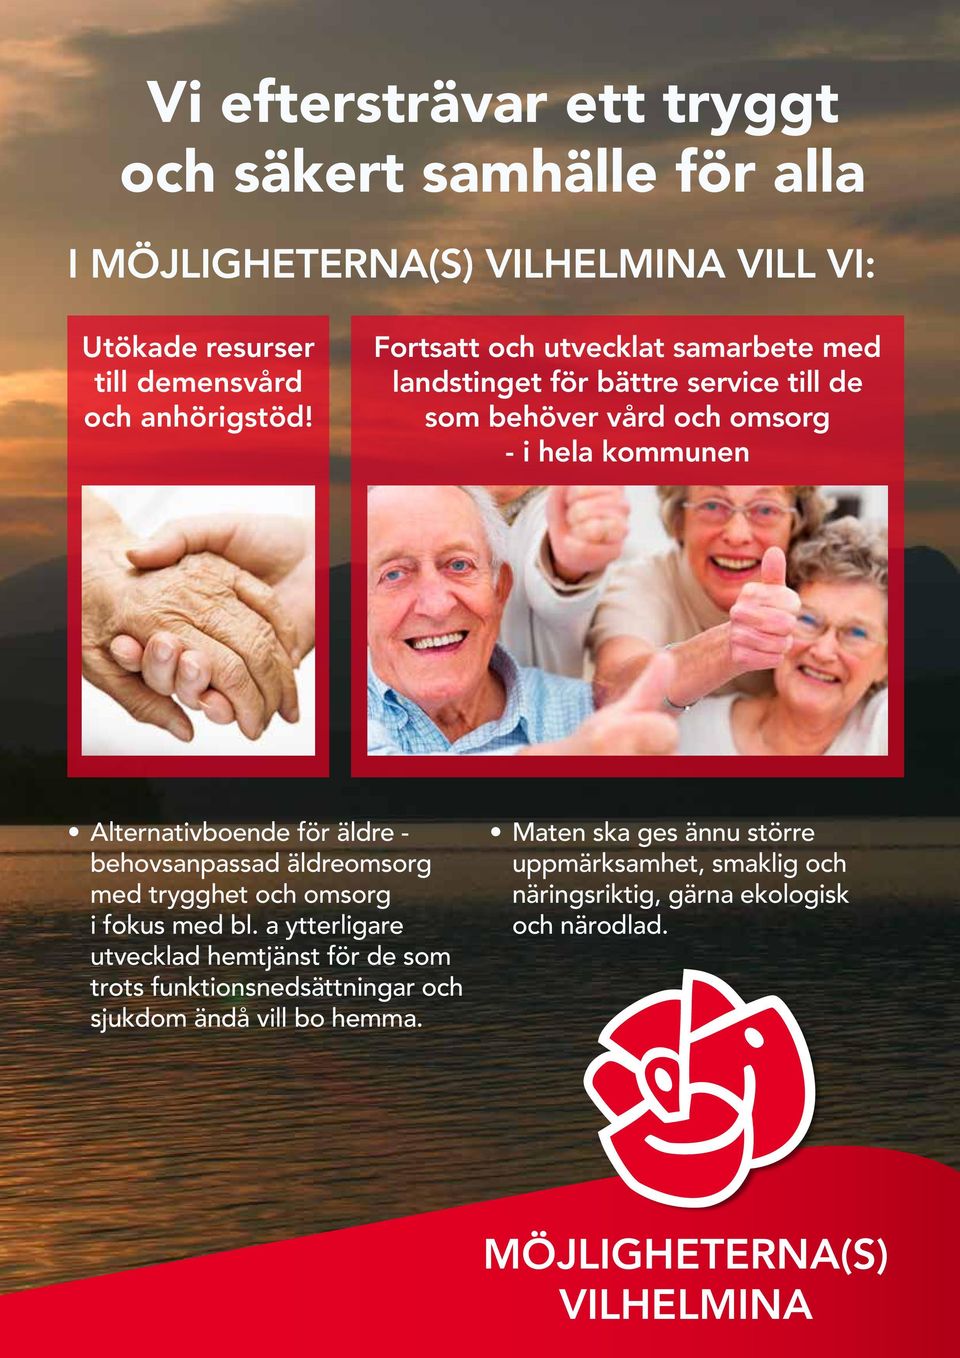 Alternativboende för äldre - behovsanpassad äldreomsorg med trygghet och omsorg i fokus med bl.